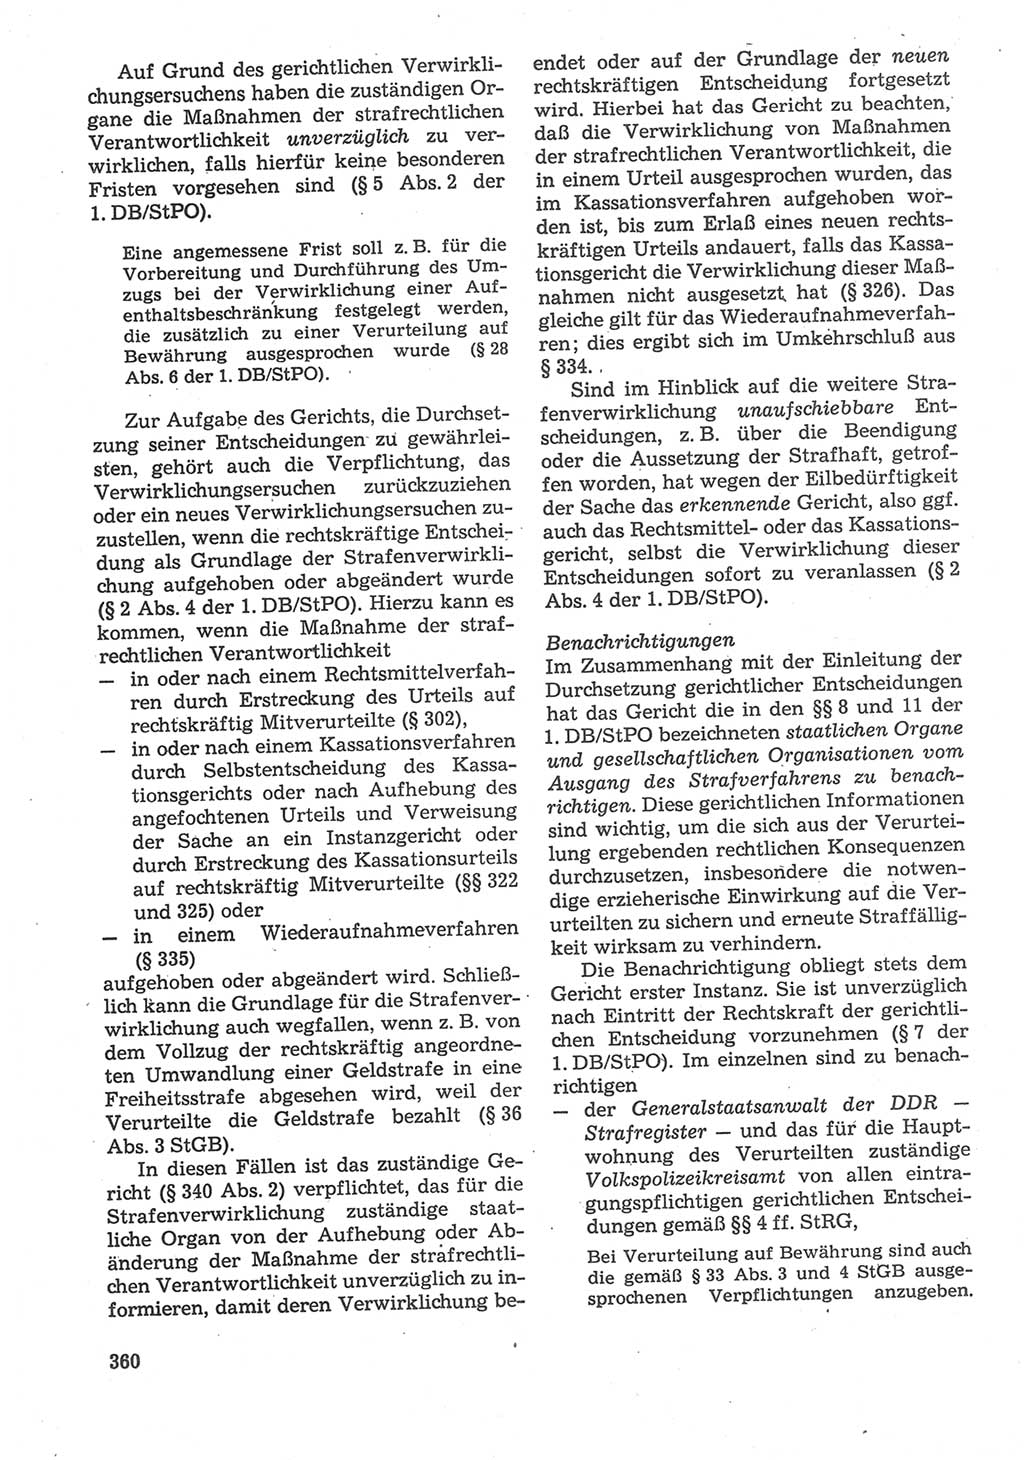 Strafverfahrensrecht [Deutsche Demokratische Republik (DDR)], Lehrbuch 1987, Seite 360 (Strafverf.-R. DDR Lb. 1987, S. 360)